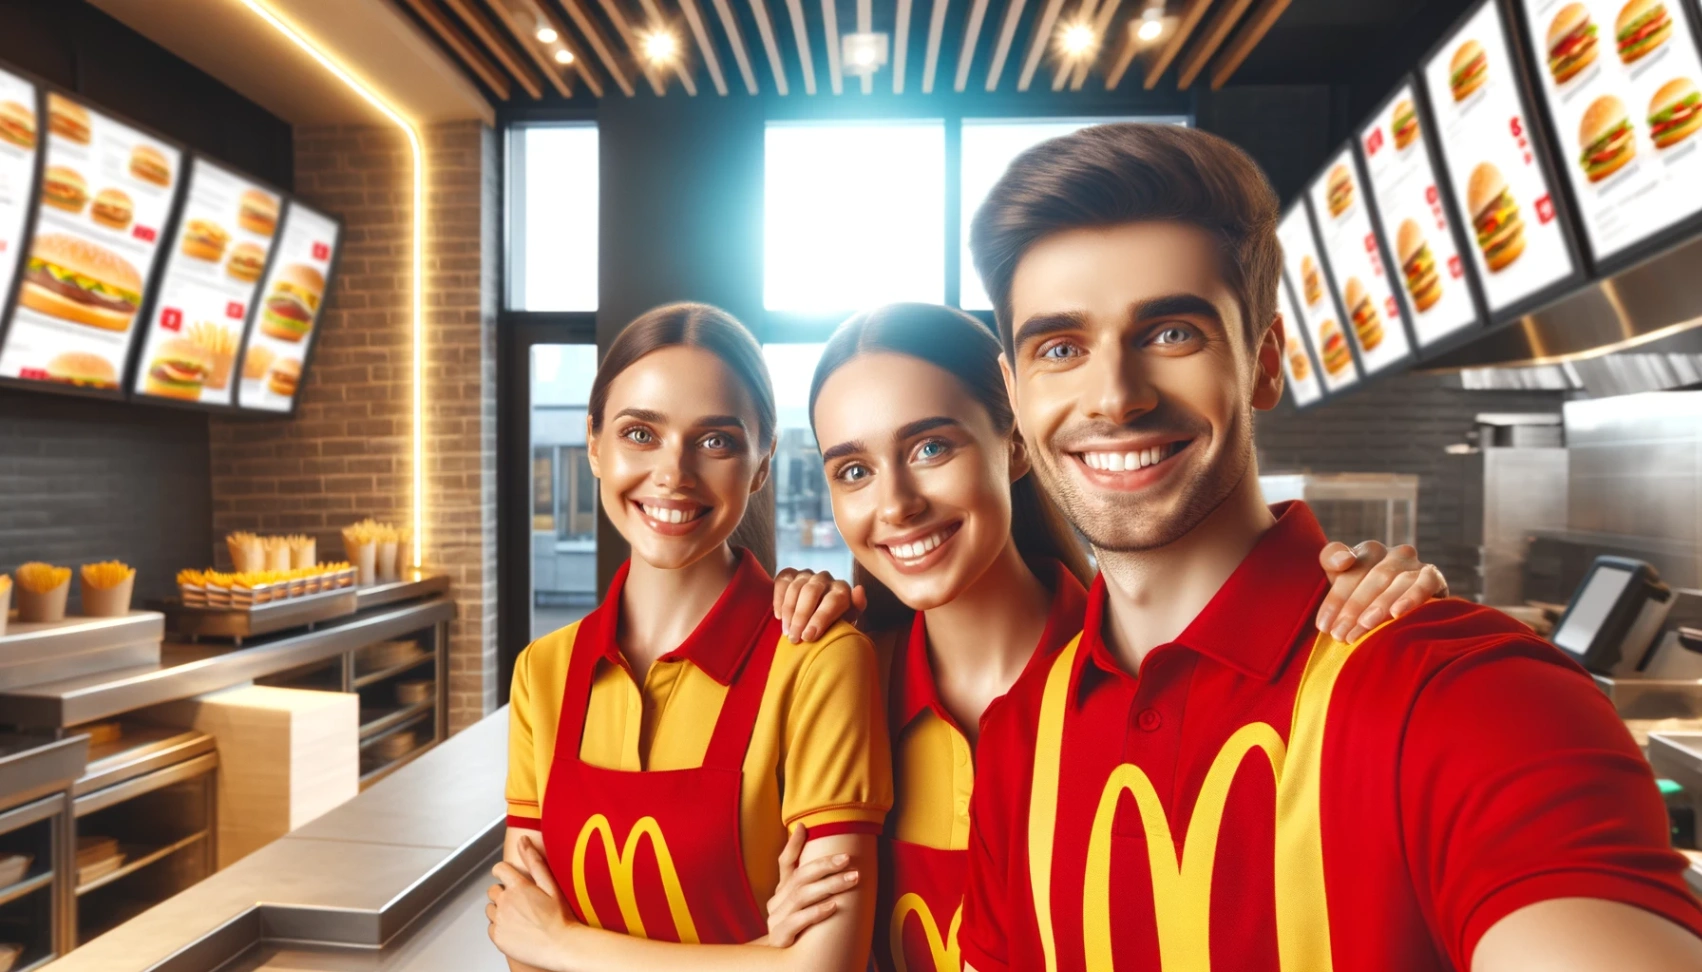 وظائف في ماكدونالدز: كيفية التقديم بسهولة عبر الإنترنت